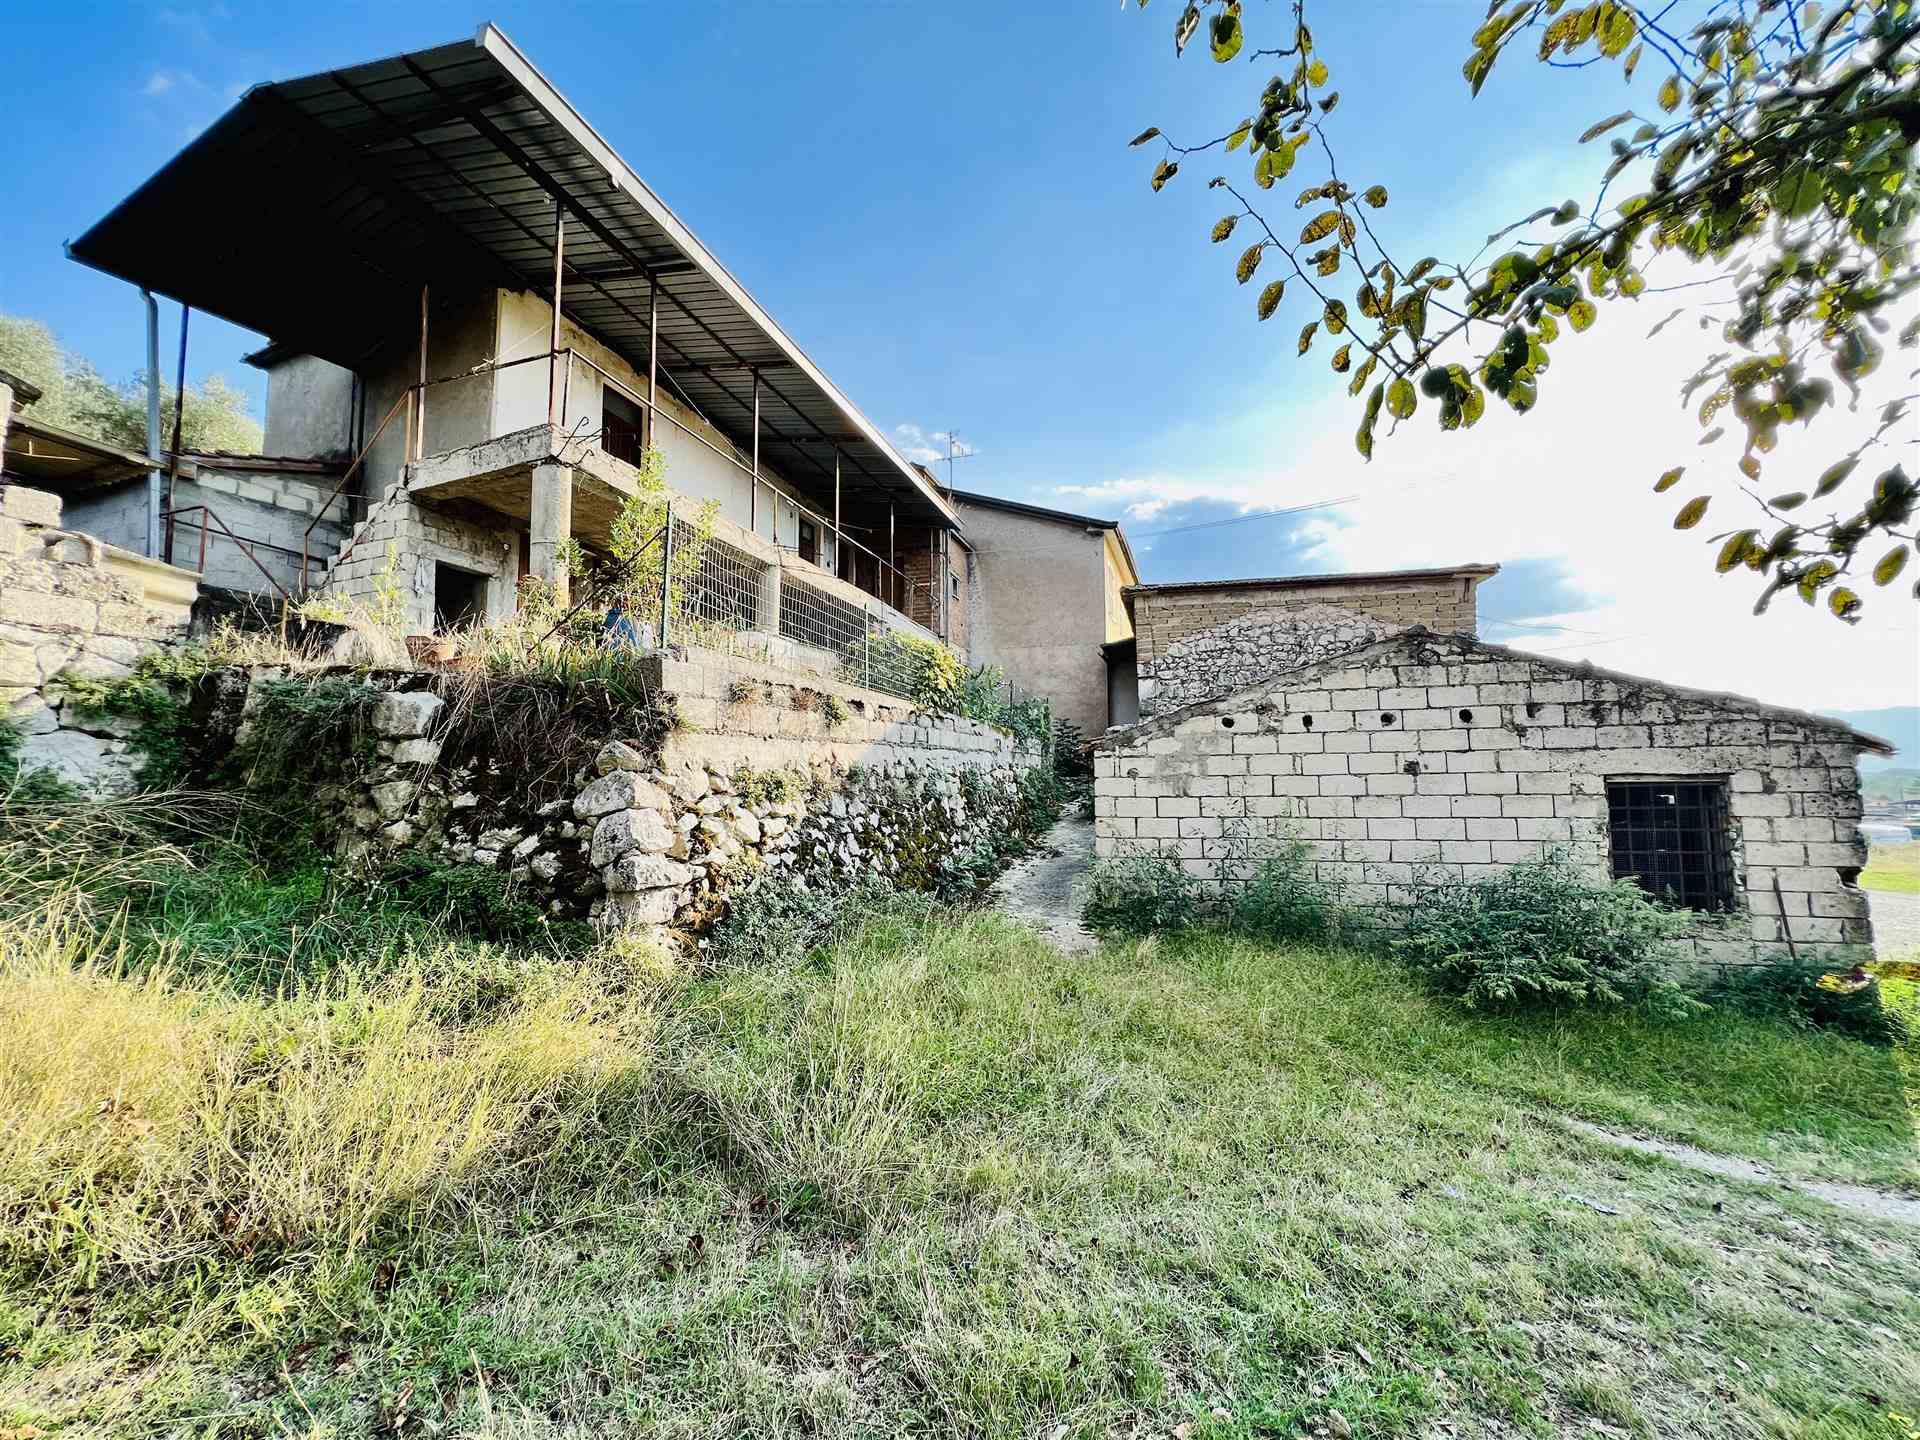 Rustico / Casale in vendita a Veroli, 10 locali, zona Giuseppe le Prata, prezzo € 86.000 | PortaleAgenzieImmobiliari.it